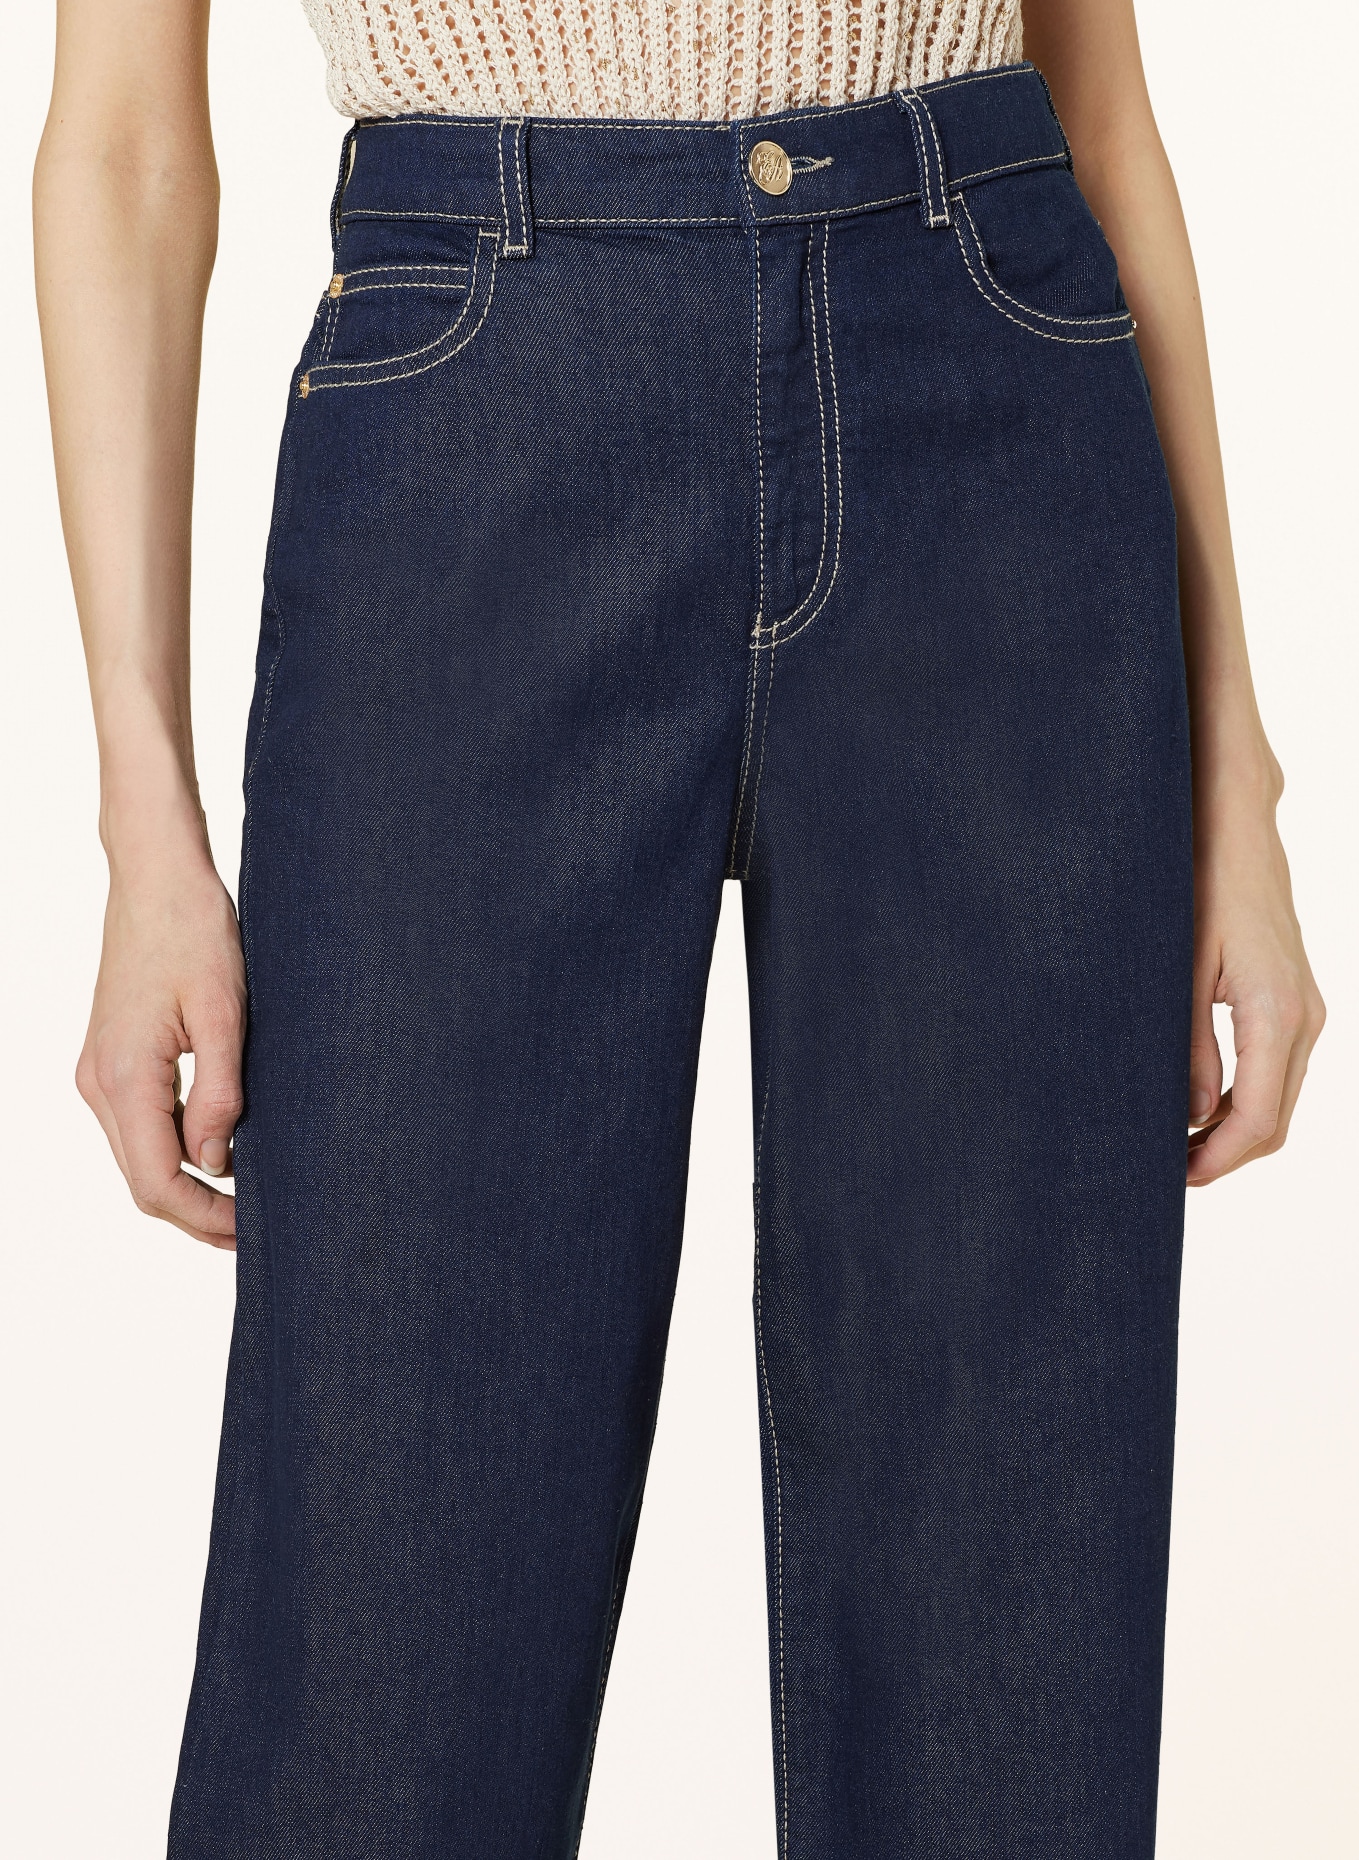 EMPORIO ARMANI Straight jeans, Color: 0941 Denim (Image 5)